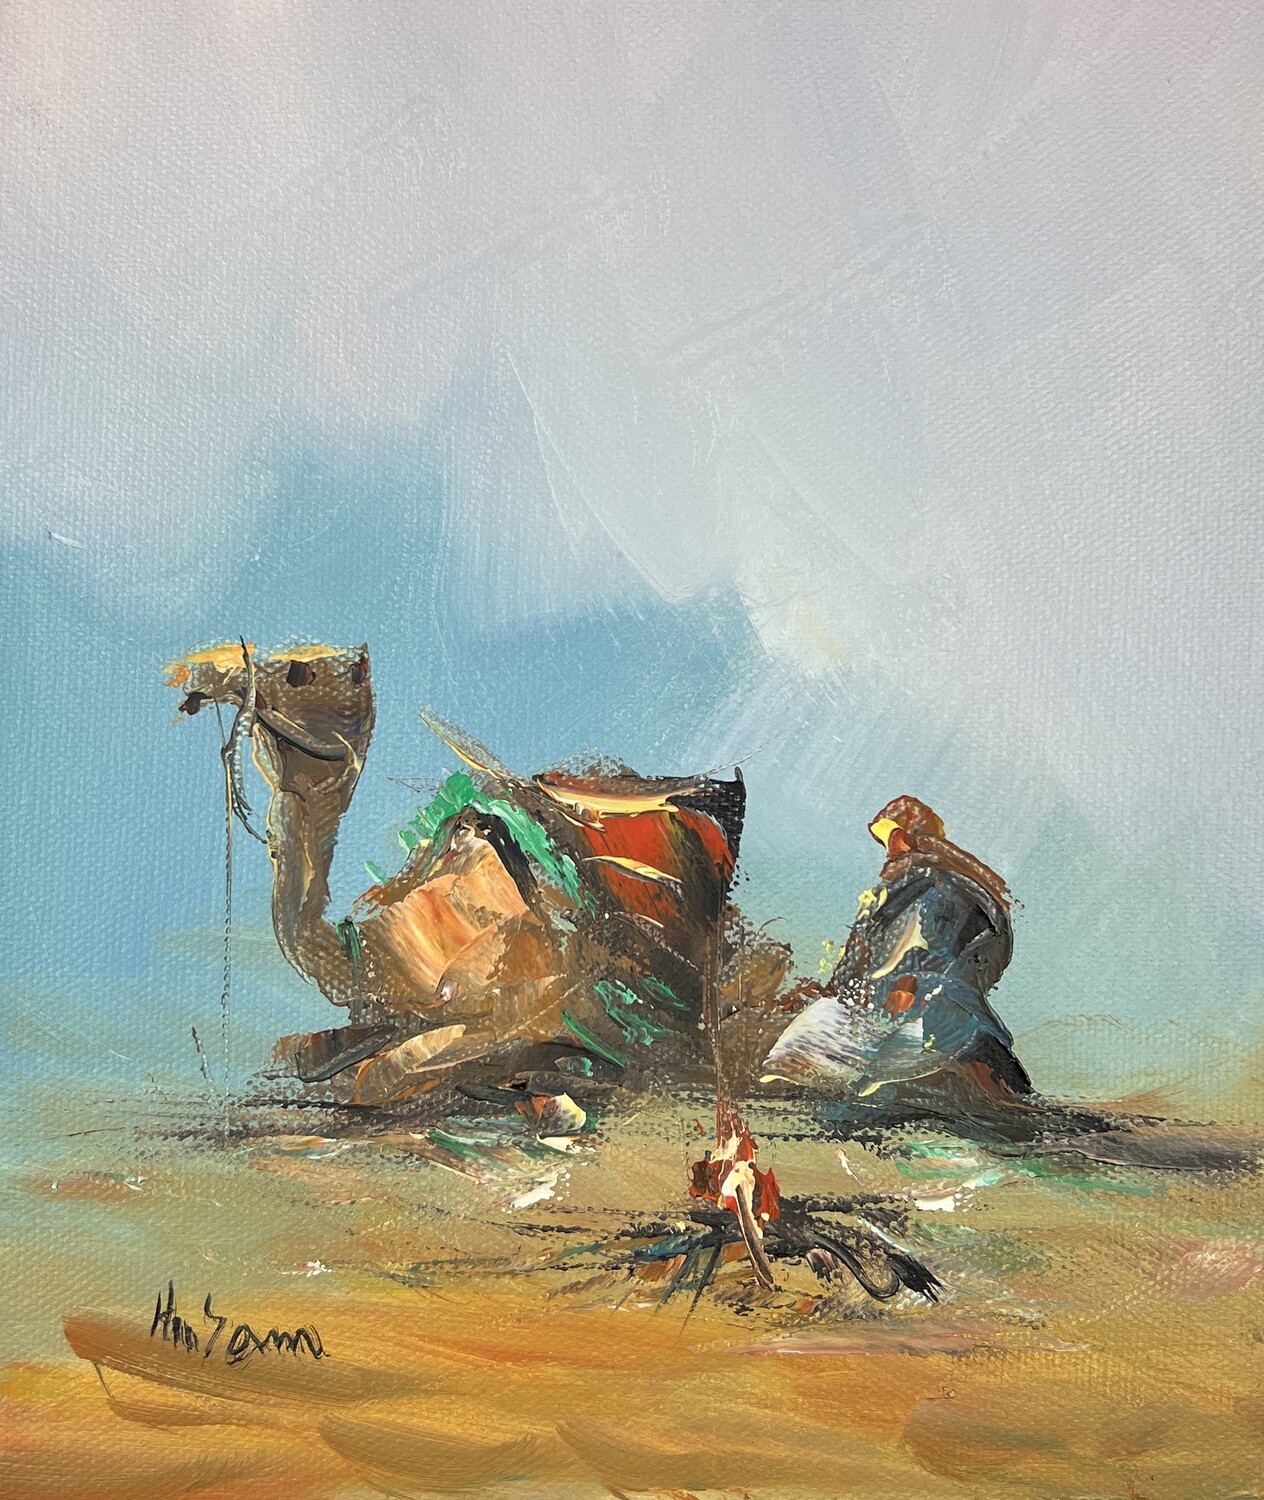 Bedouin & Camel - Knife Art Oil Painting